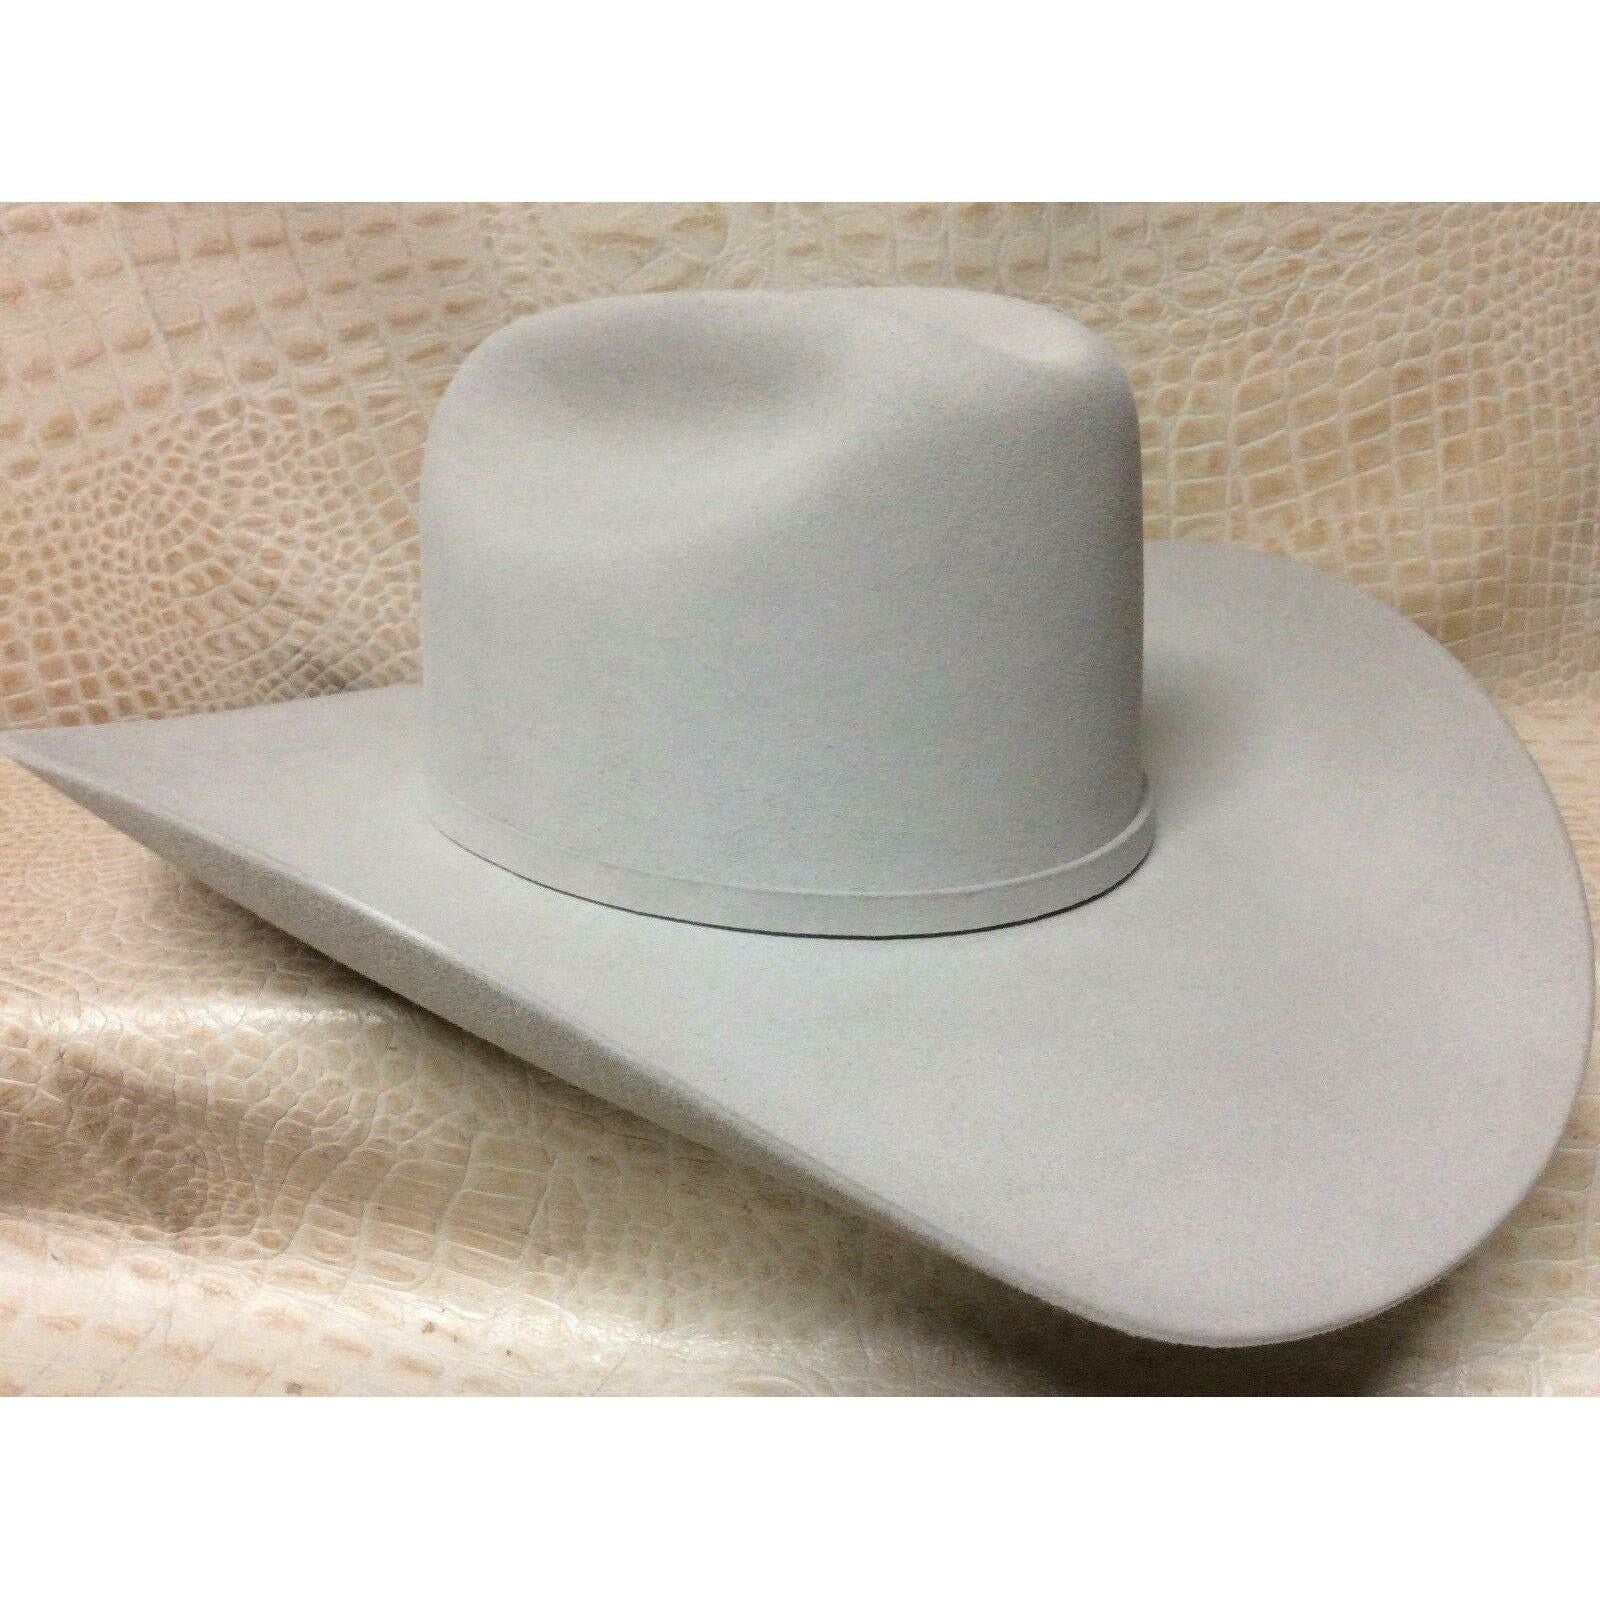 New Stetson Shasta Mist Grey 10X Beaver Fur Felt Western Cowboy Hat - CWesternwear